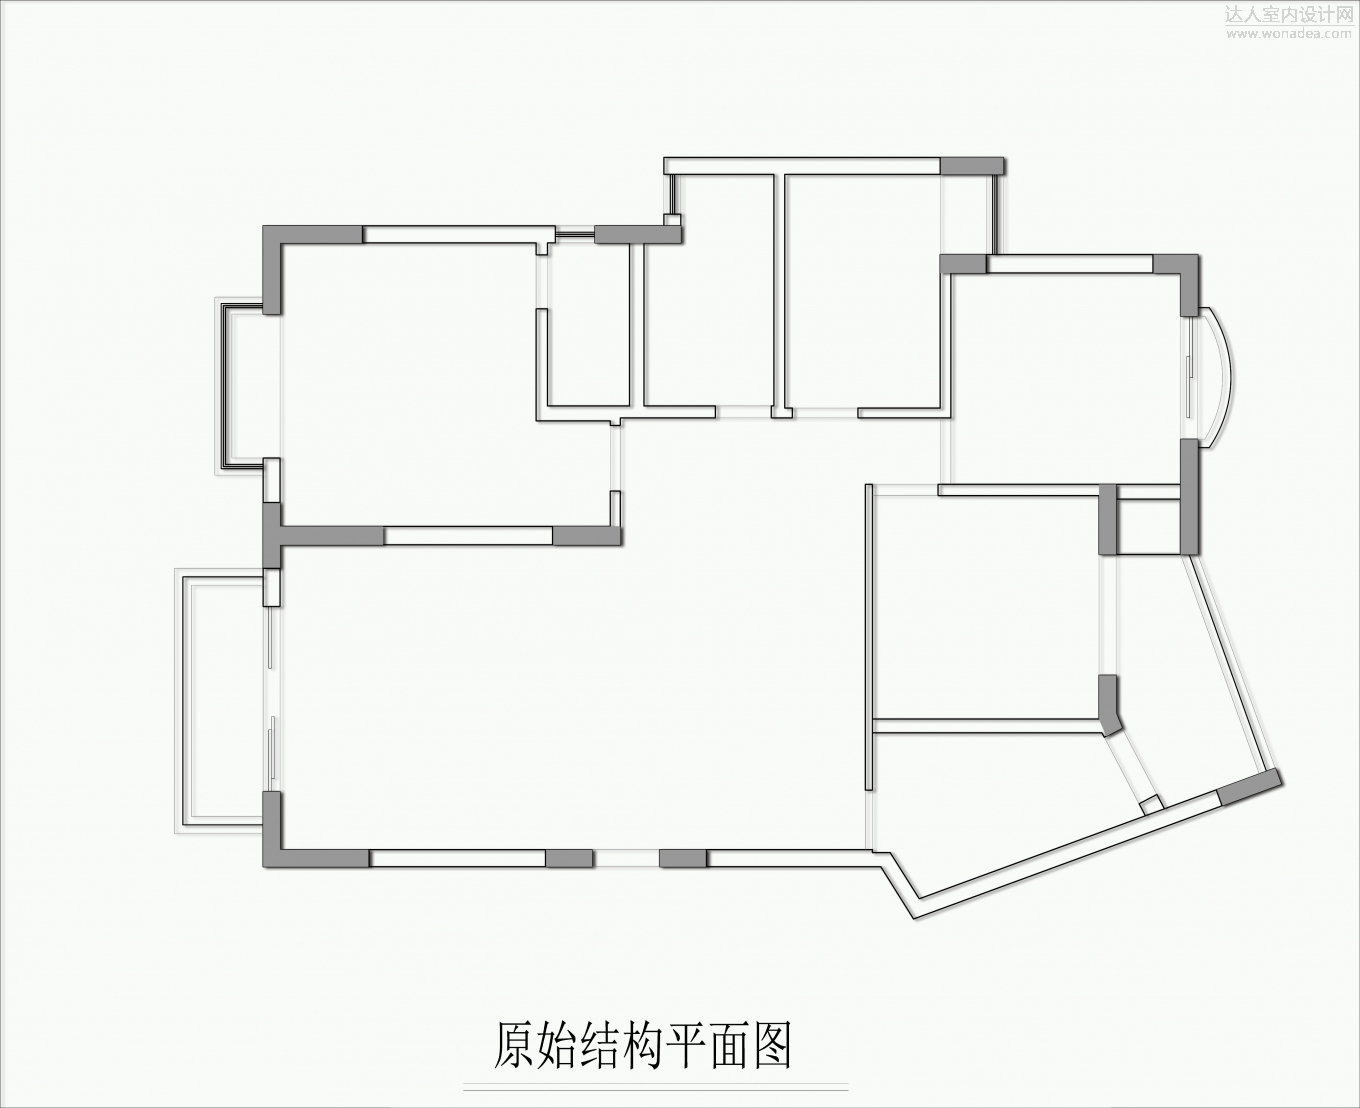 温馨家园1F502施工图0828-Model.jpg